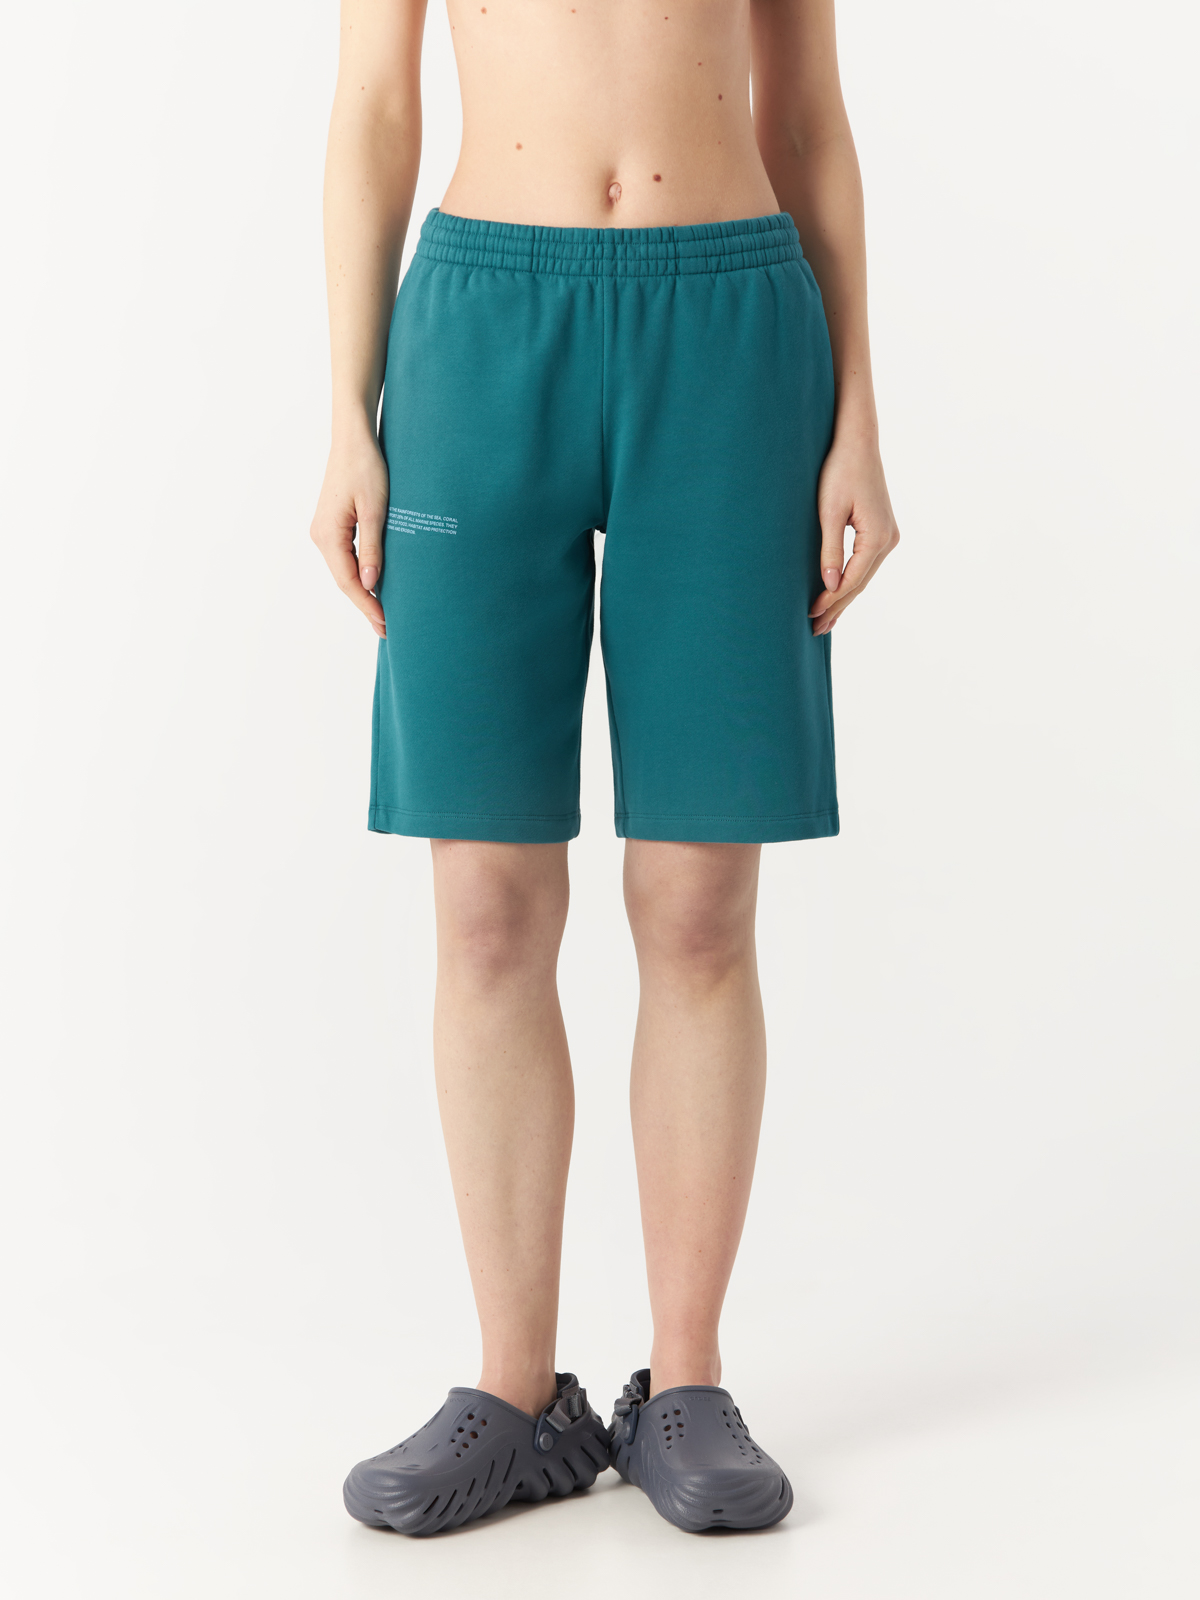 Повседневные шорты женские PANGAIA Coral Reef Long Shorts зеленые XS